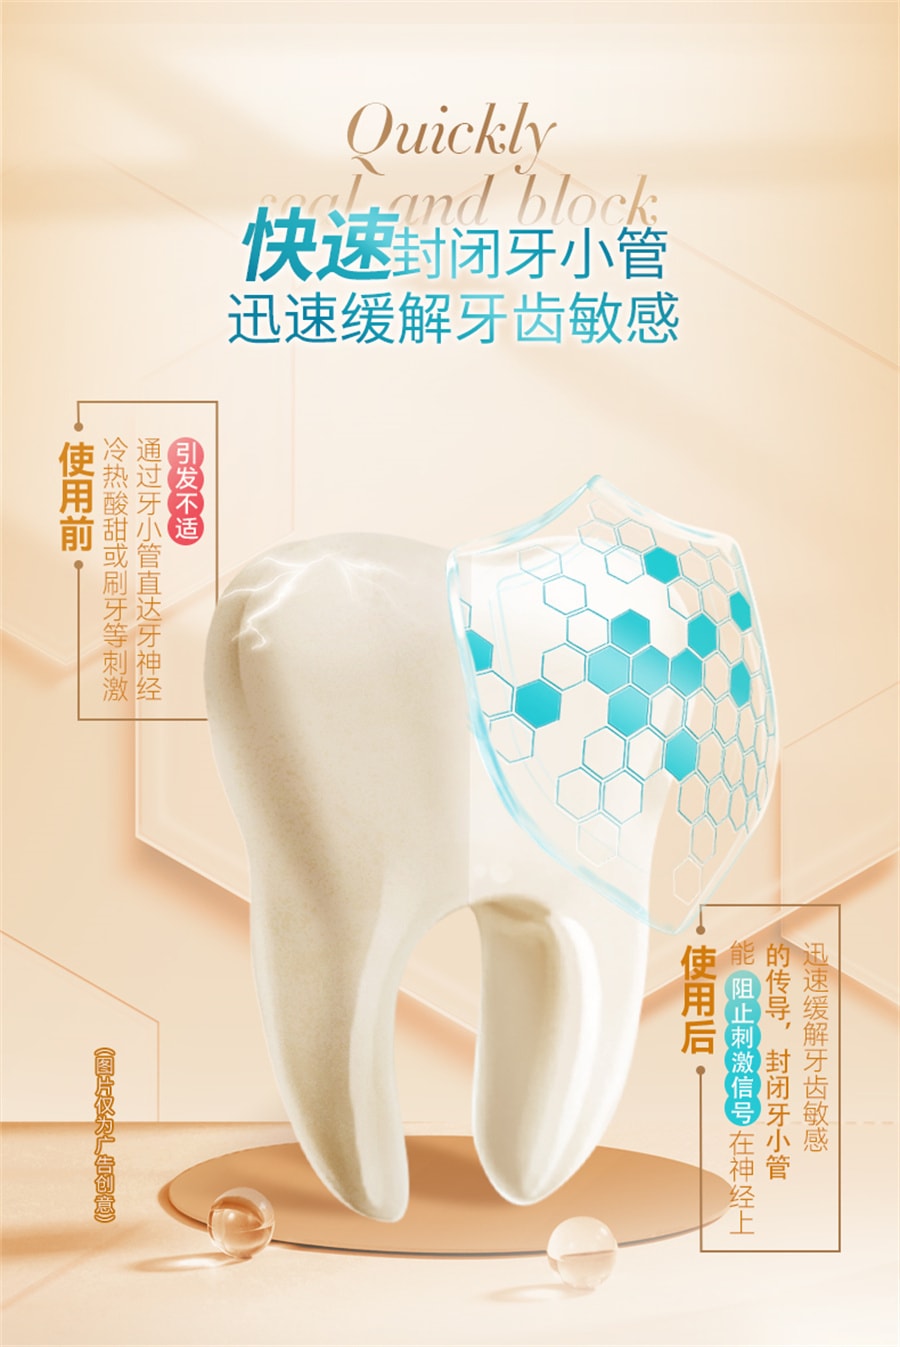 【中国直邮】冷酸灵  医研抗敏牙膏即速60s抗敏感泵式成人按压式牙膏  120g/支